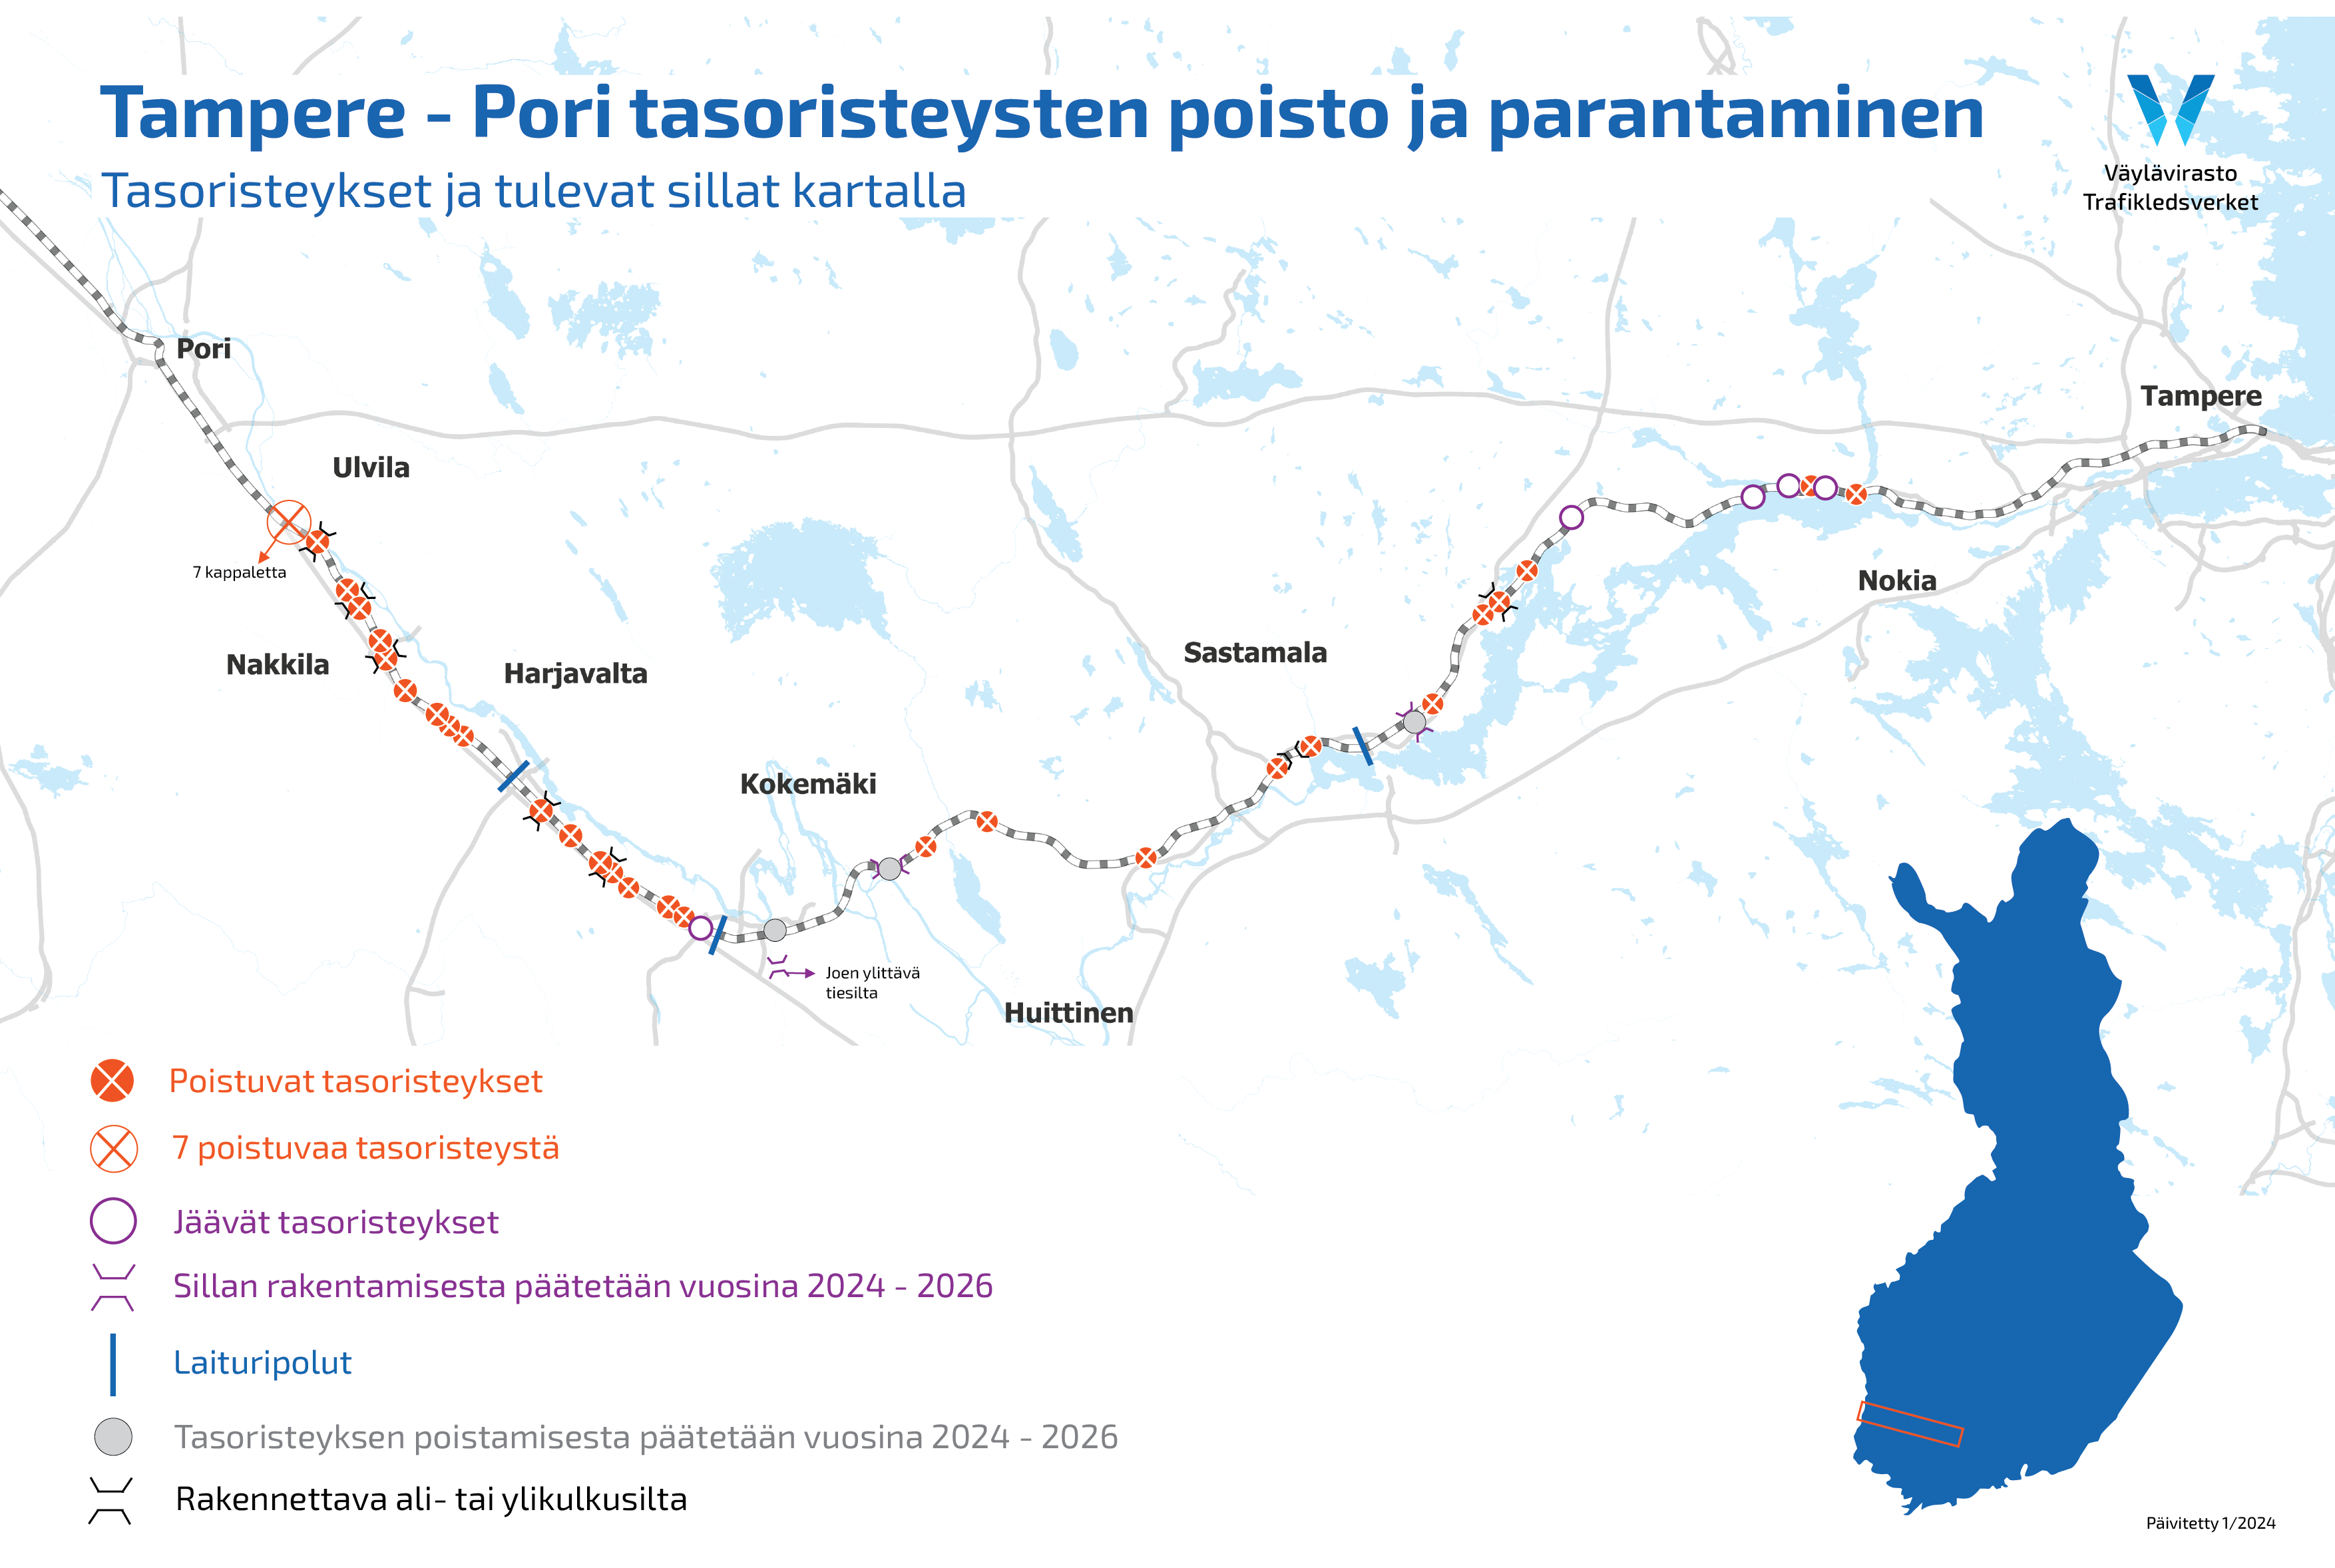 Tampere-Pori tasoristeysten poisto ja parantaminen -hankkeen kartta, jossa näkyy tasoristeysten sekä tulevien siltojen toimenpiteet